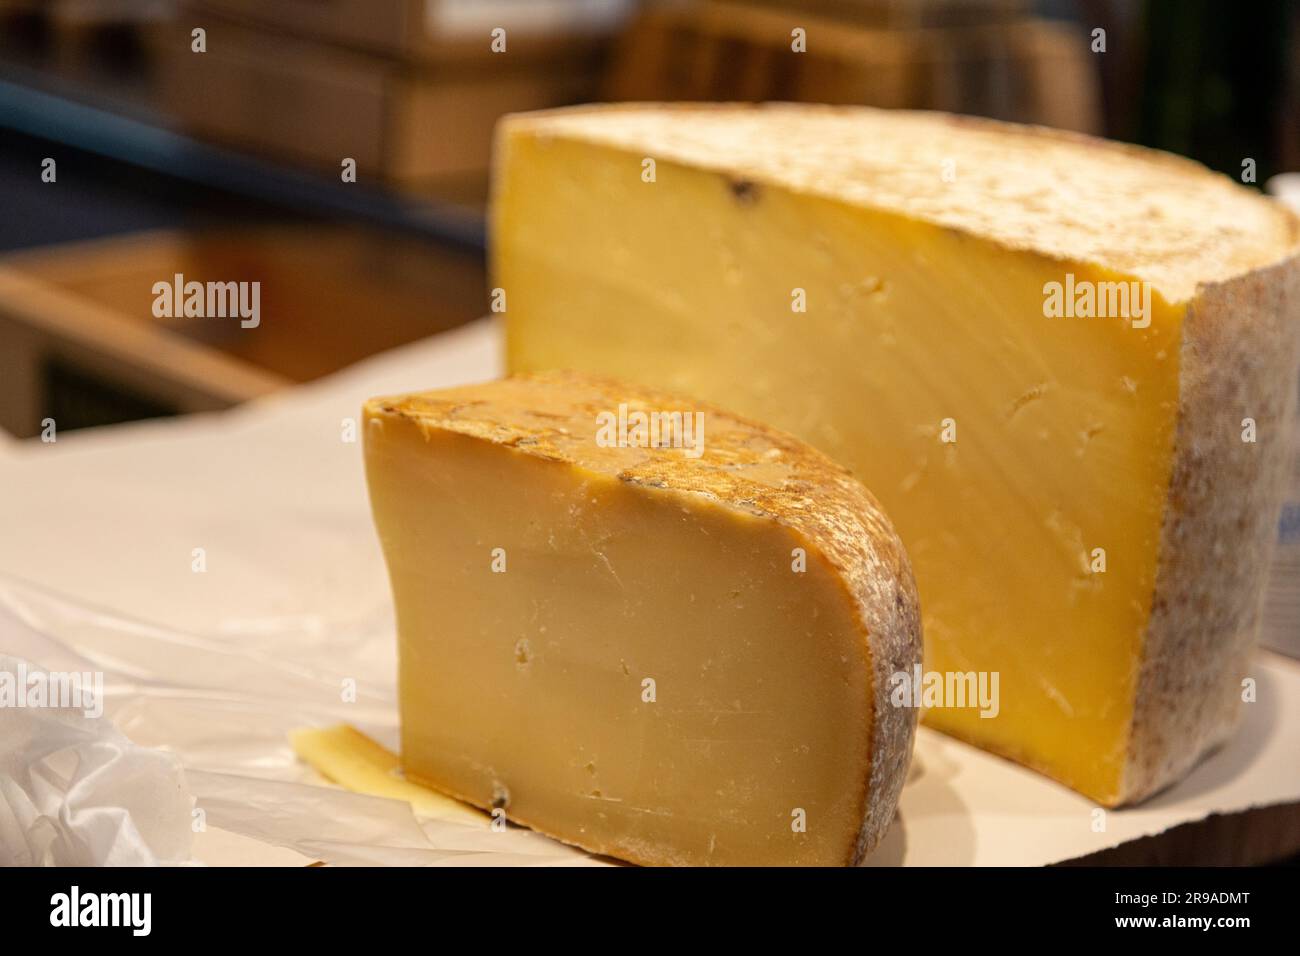 Ruota da taglio Cheesemonger di Cheddar con rilegatura in tessuto invecchiato di 7 mesi, Grafton Village Cheese Shop, Grafton, Vermont, USA Foto Stock